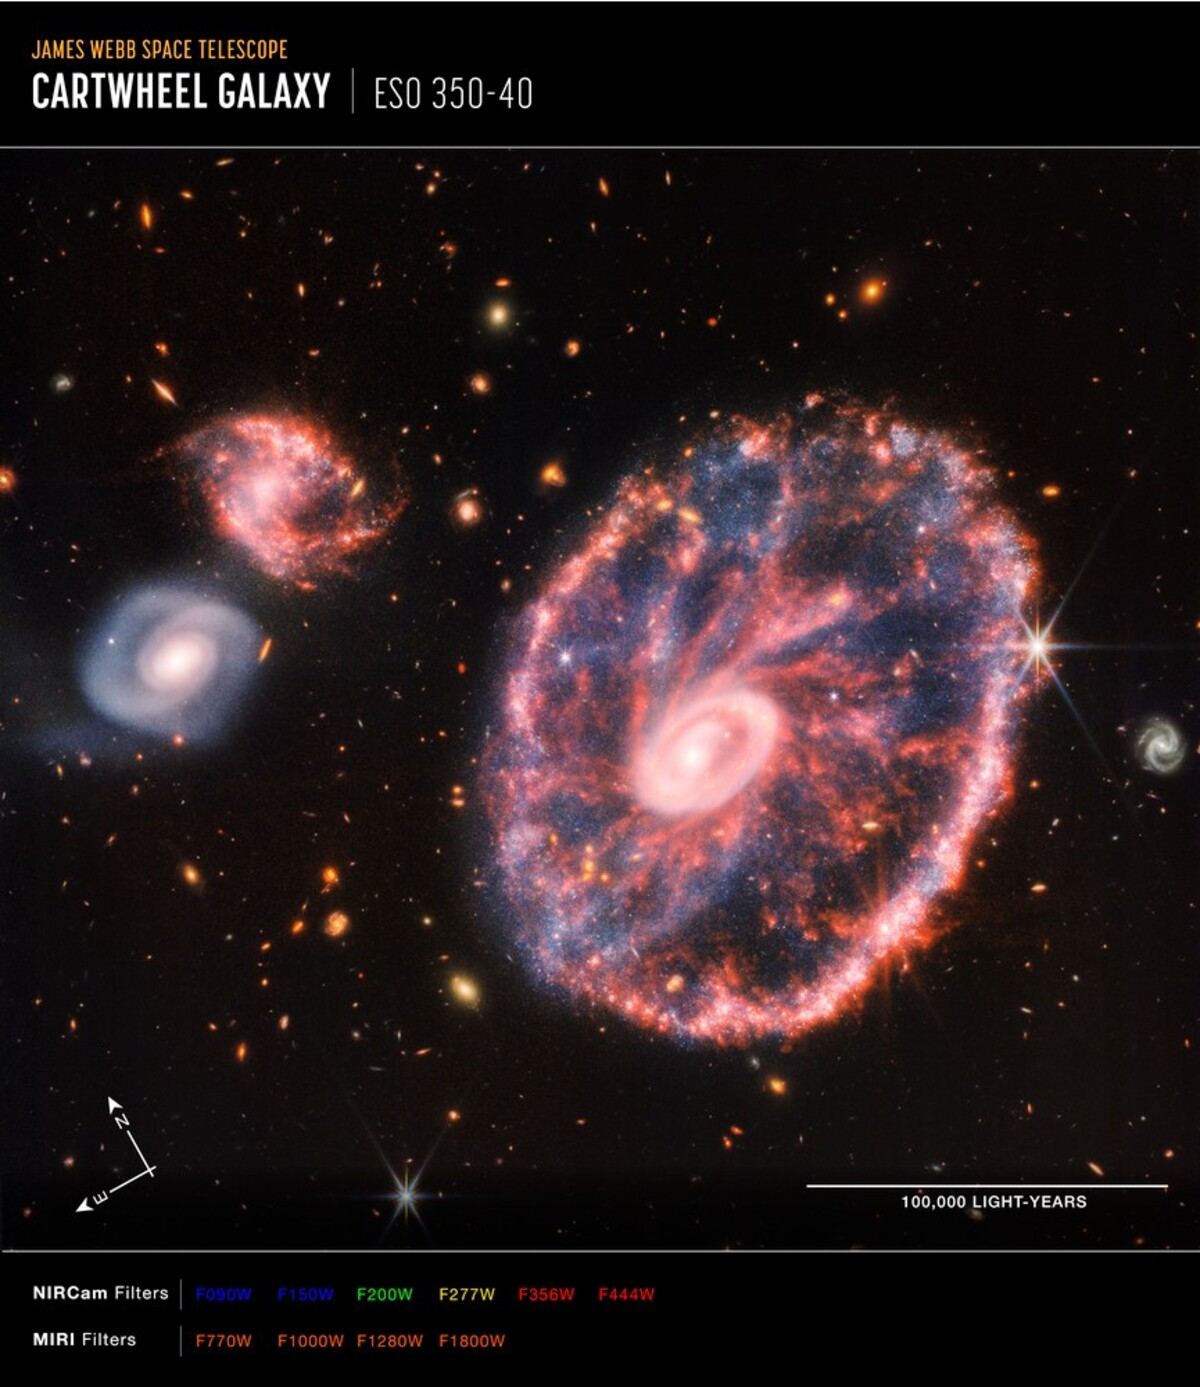 Galaxie Cartwheel zachycená Webbovým dalekohledem.